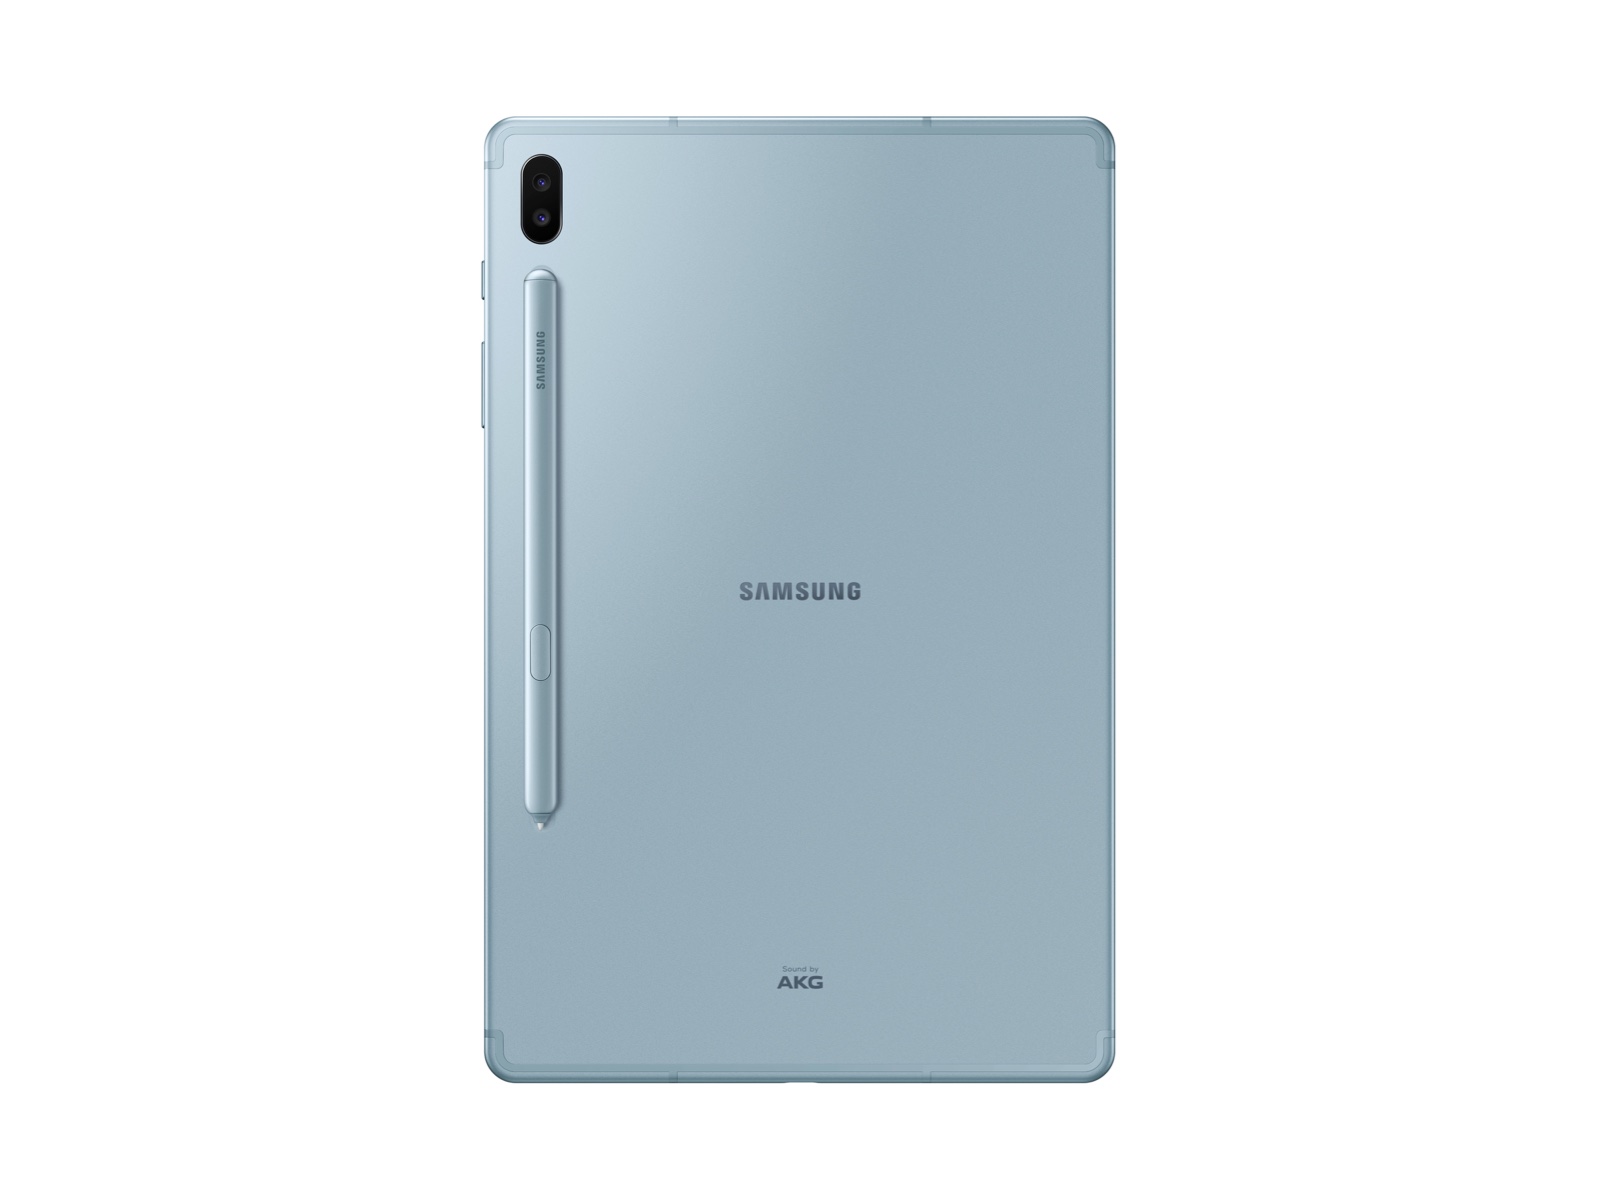 Galaxy Tab S6 10.5 128GB Cloud Blue Wi-Fi S Pen included Tablets - SM-T860NZBAXAR